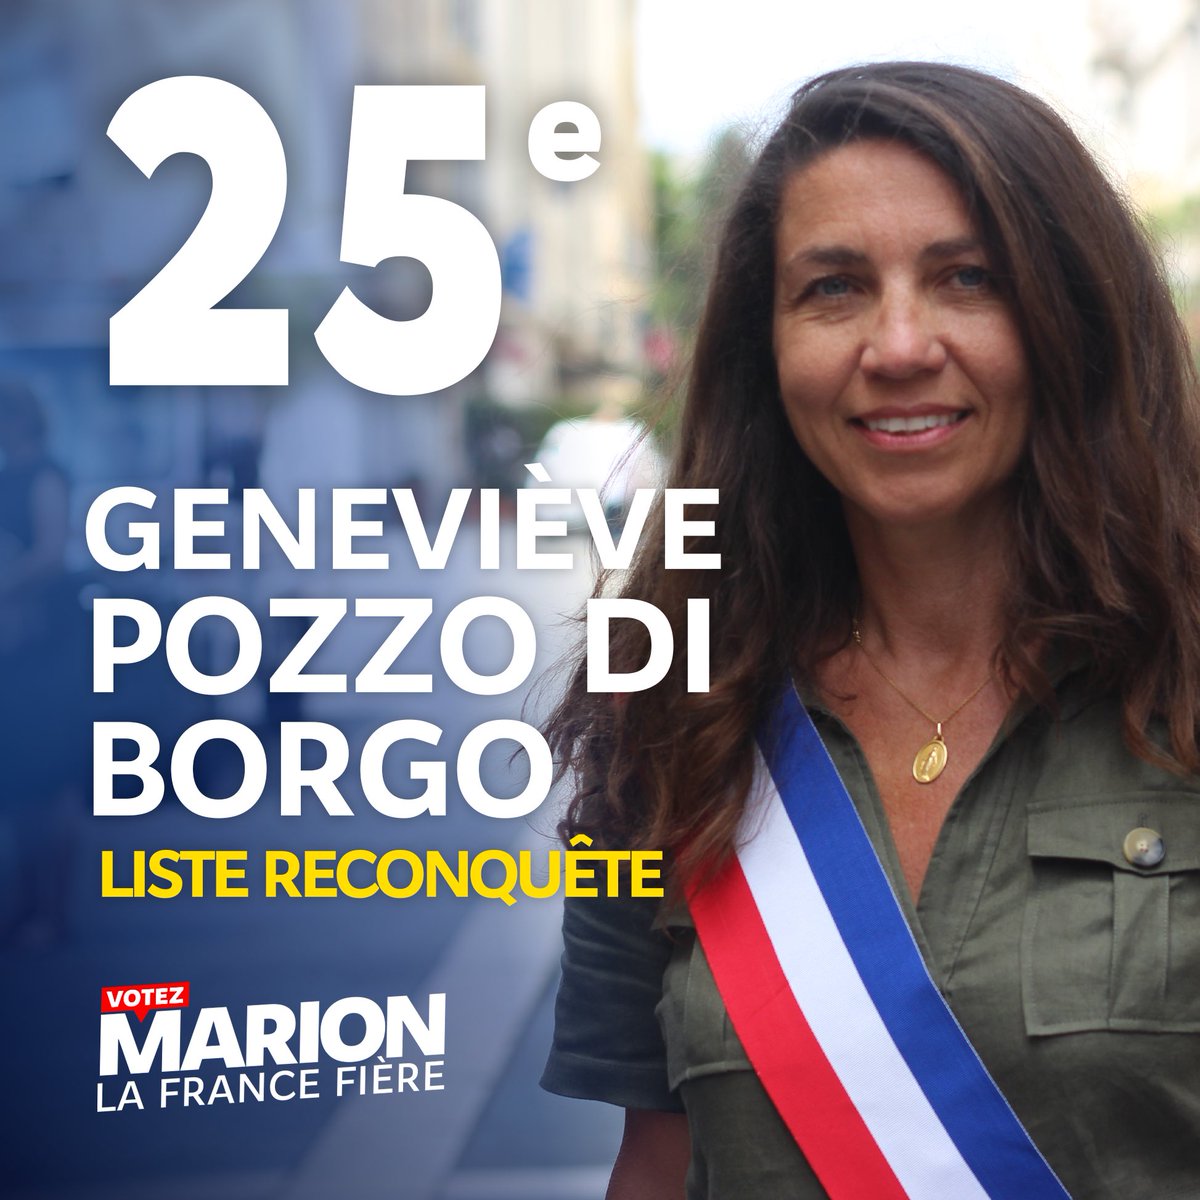 @arno_humbert 25. Geneviève @Pozzo_diBorgo est conseillère municipale et métropolitaine @MvtConservateur de Nice, et représentante associative dans l'aide à la parentalité. Elle a 52 ans et vient des Alpes-Maritimes.